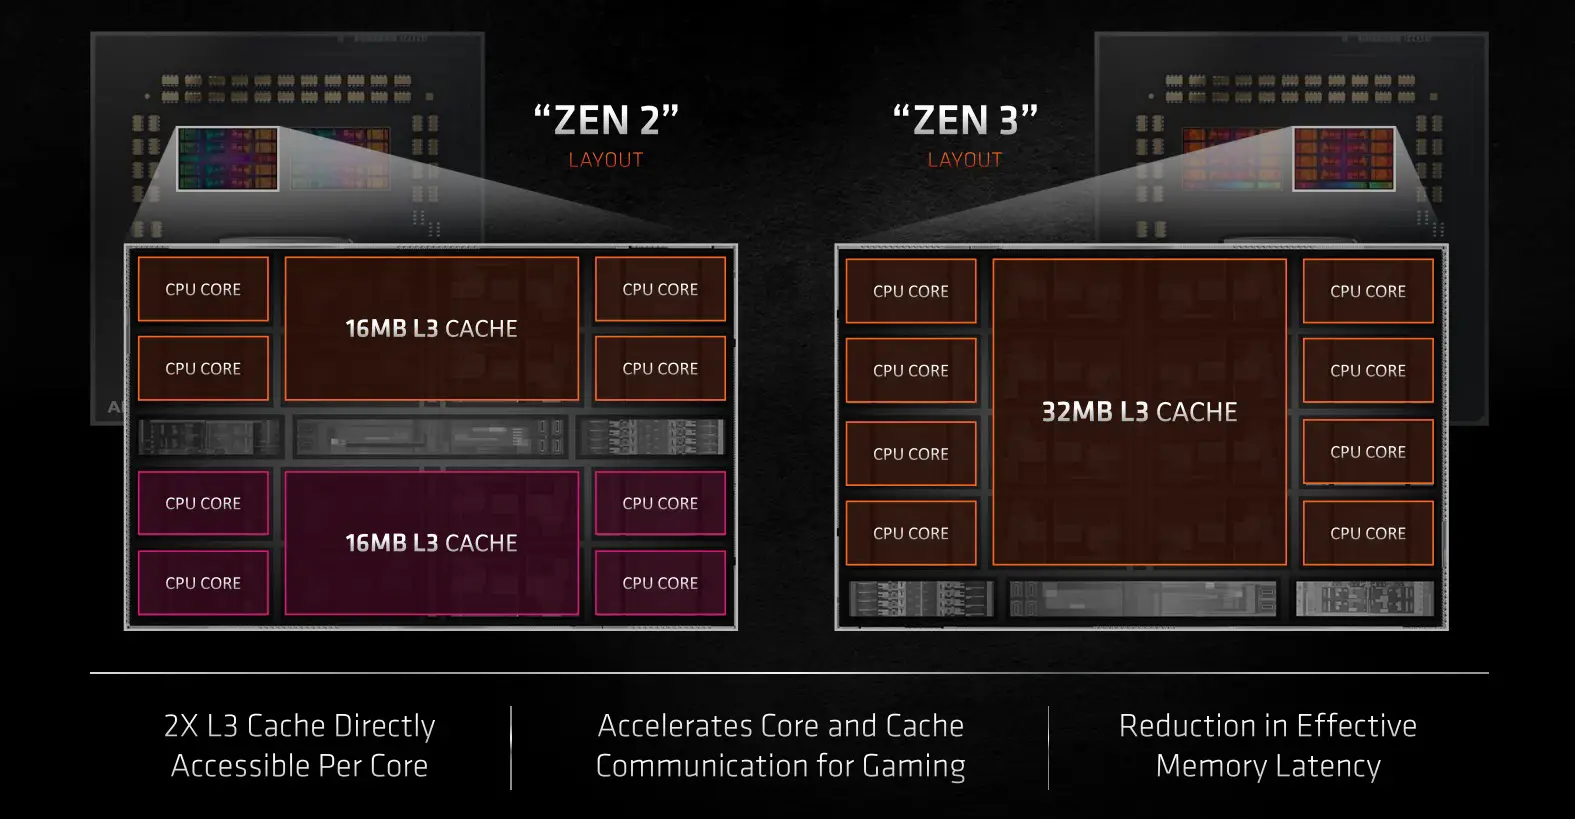 Zen 3 vs Zen 2 layout